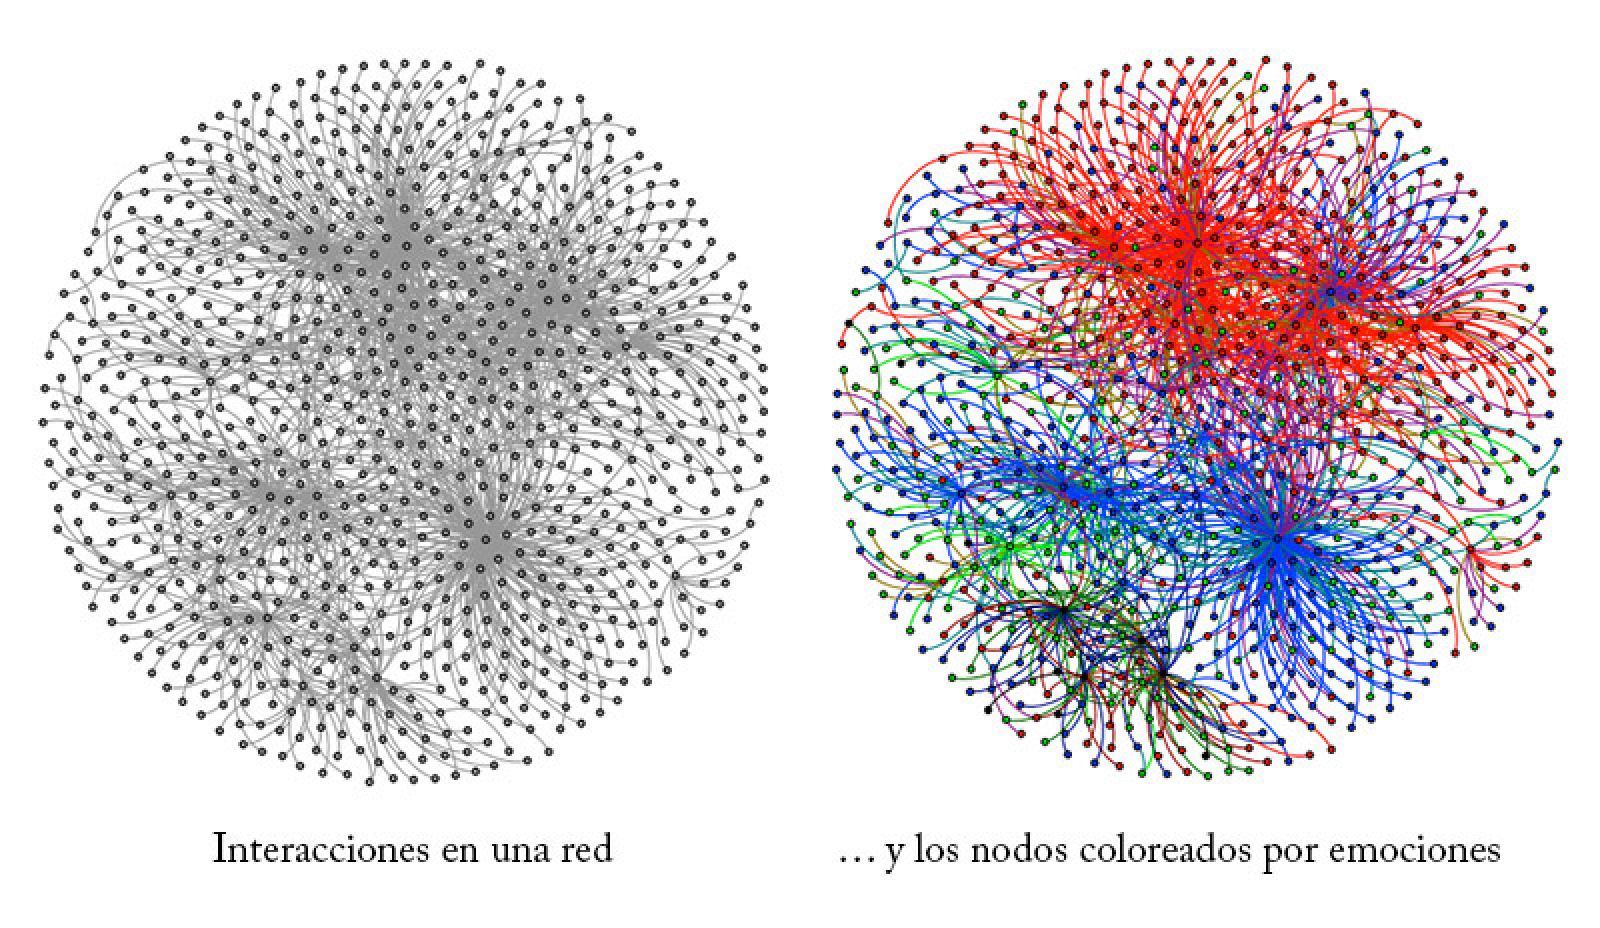 En la red de interacciones, los mensajes en rojo son los de odio/ira/protesta, frente a los azules y verdes de amabilidad y sentimientos positivos.